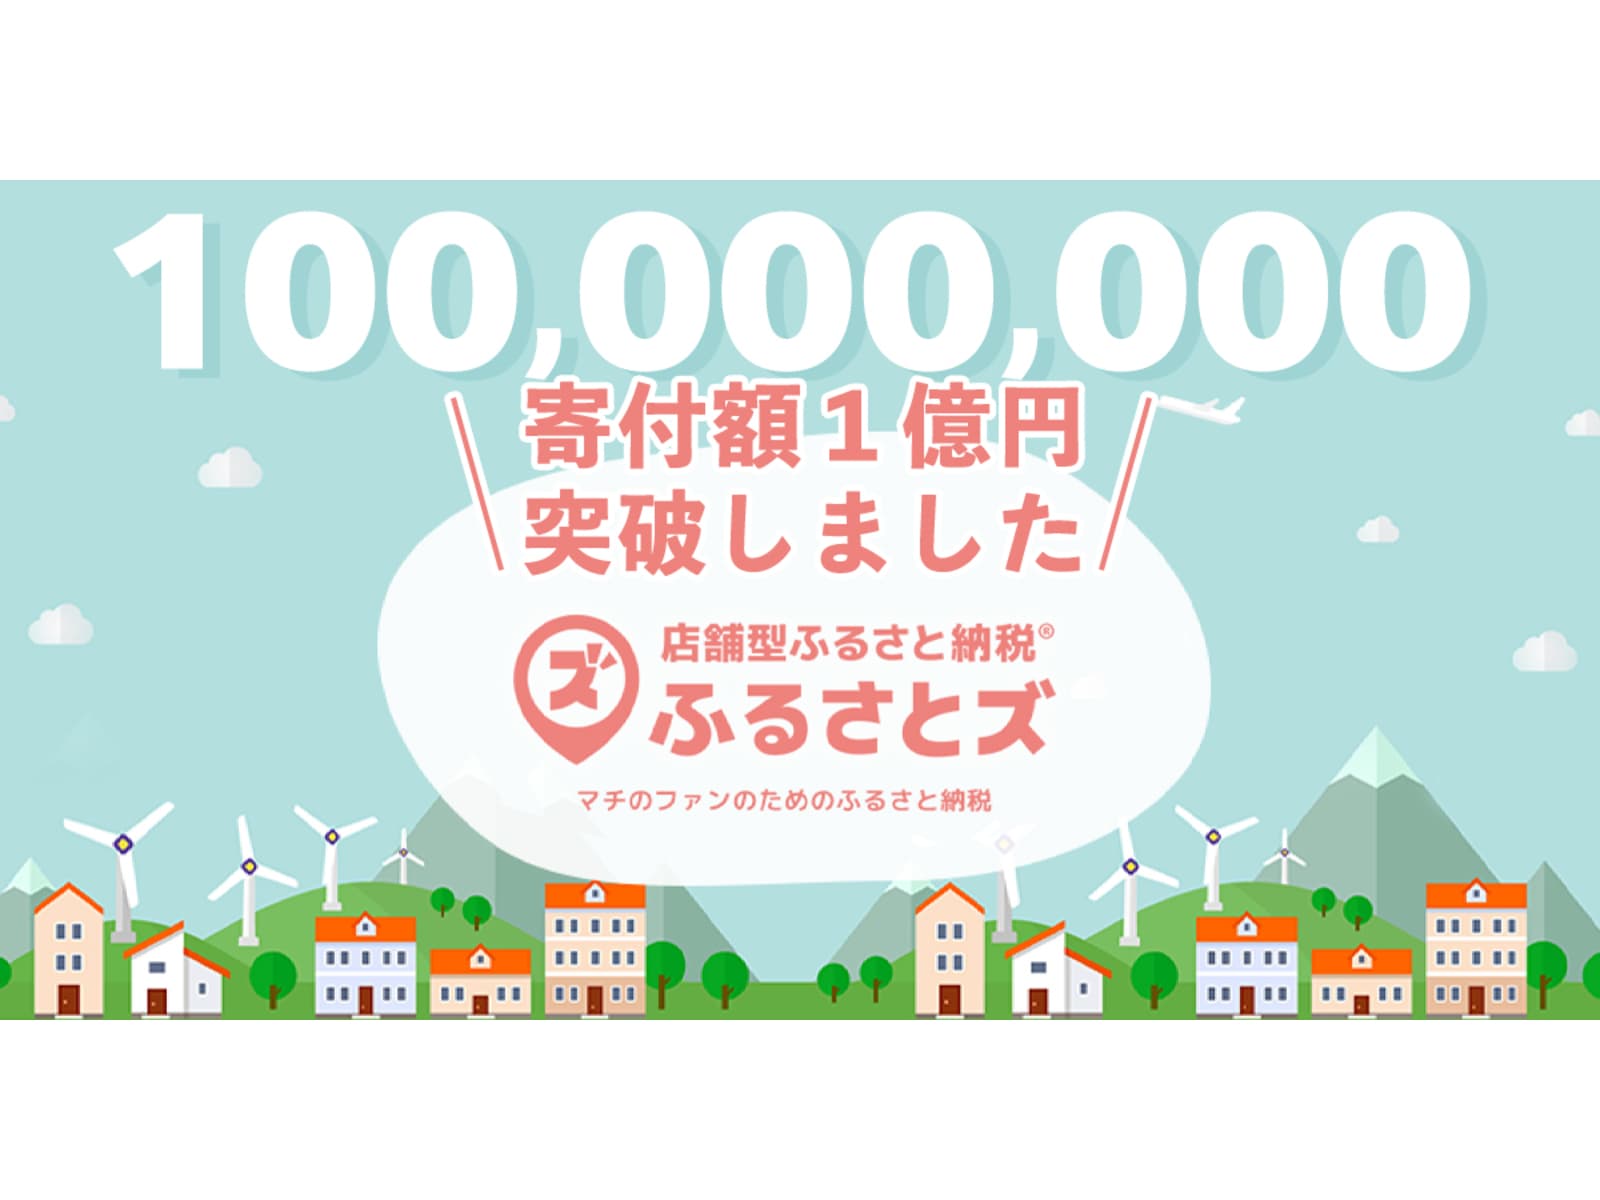 『ふるさとズ』が寄附総額１億円を突破。サービス開始からわずか1年で